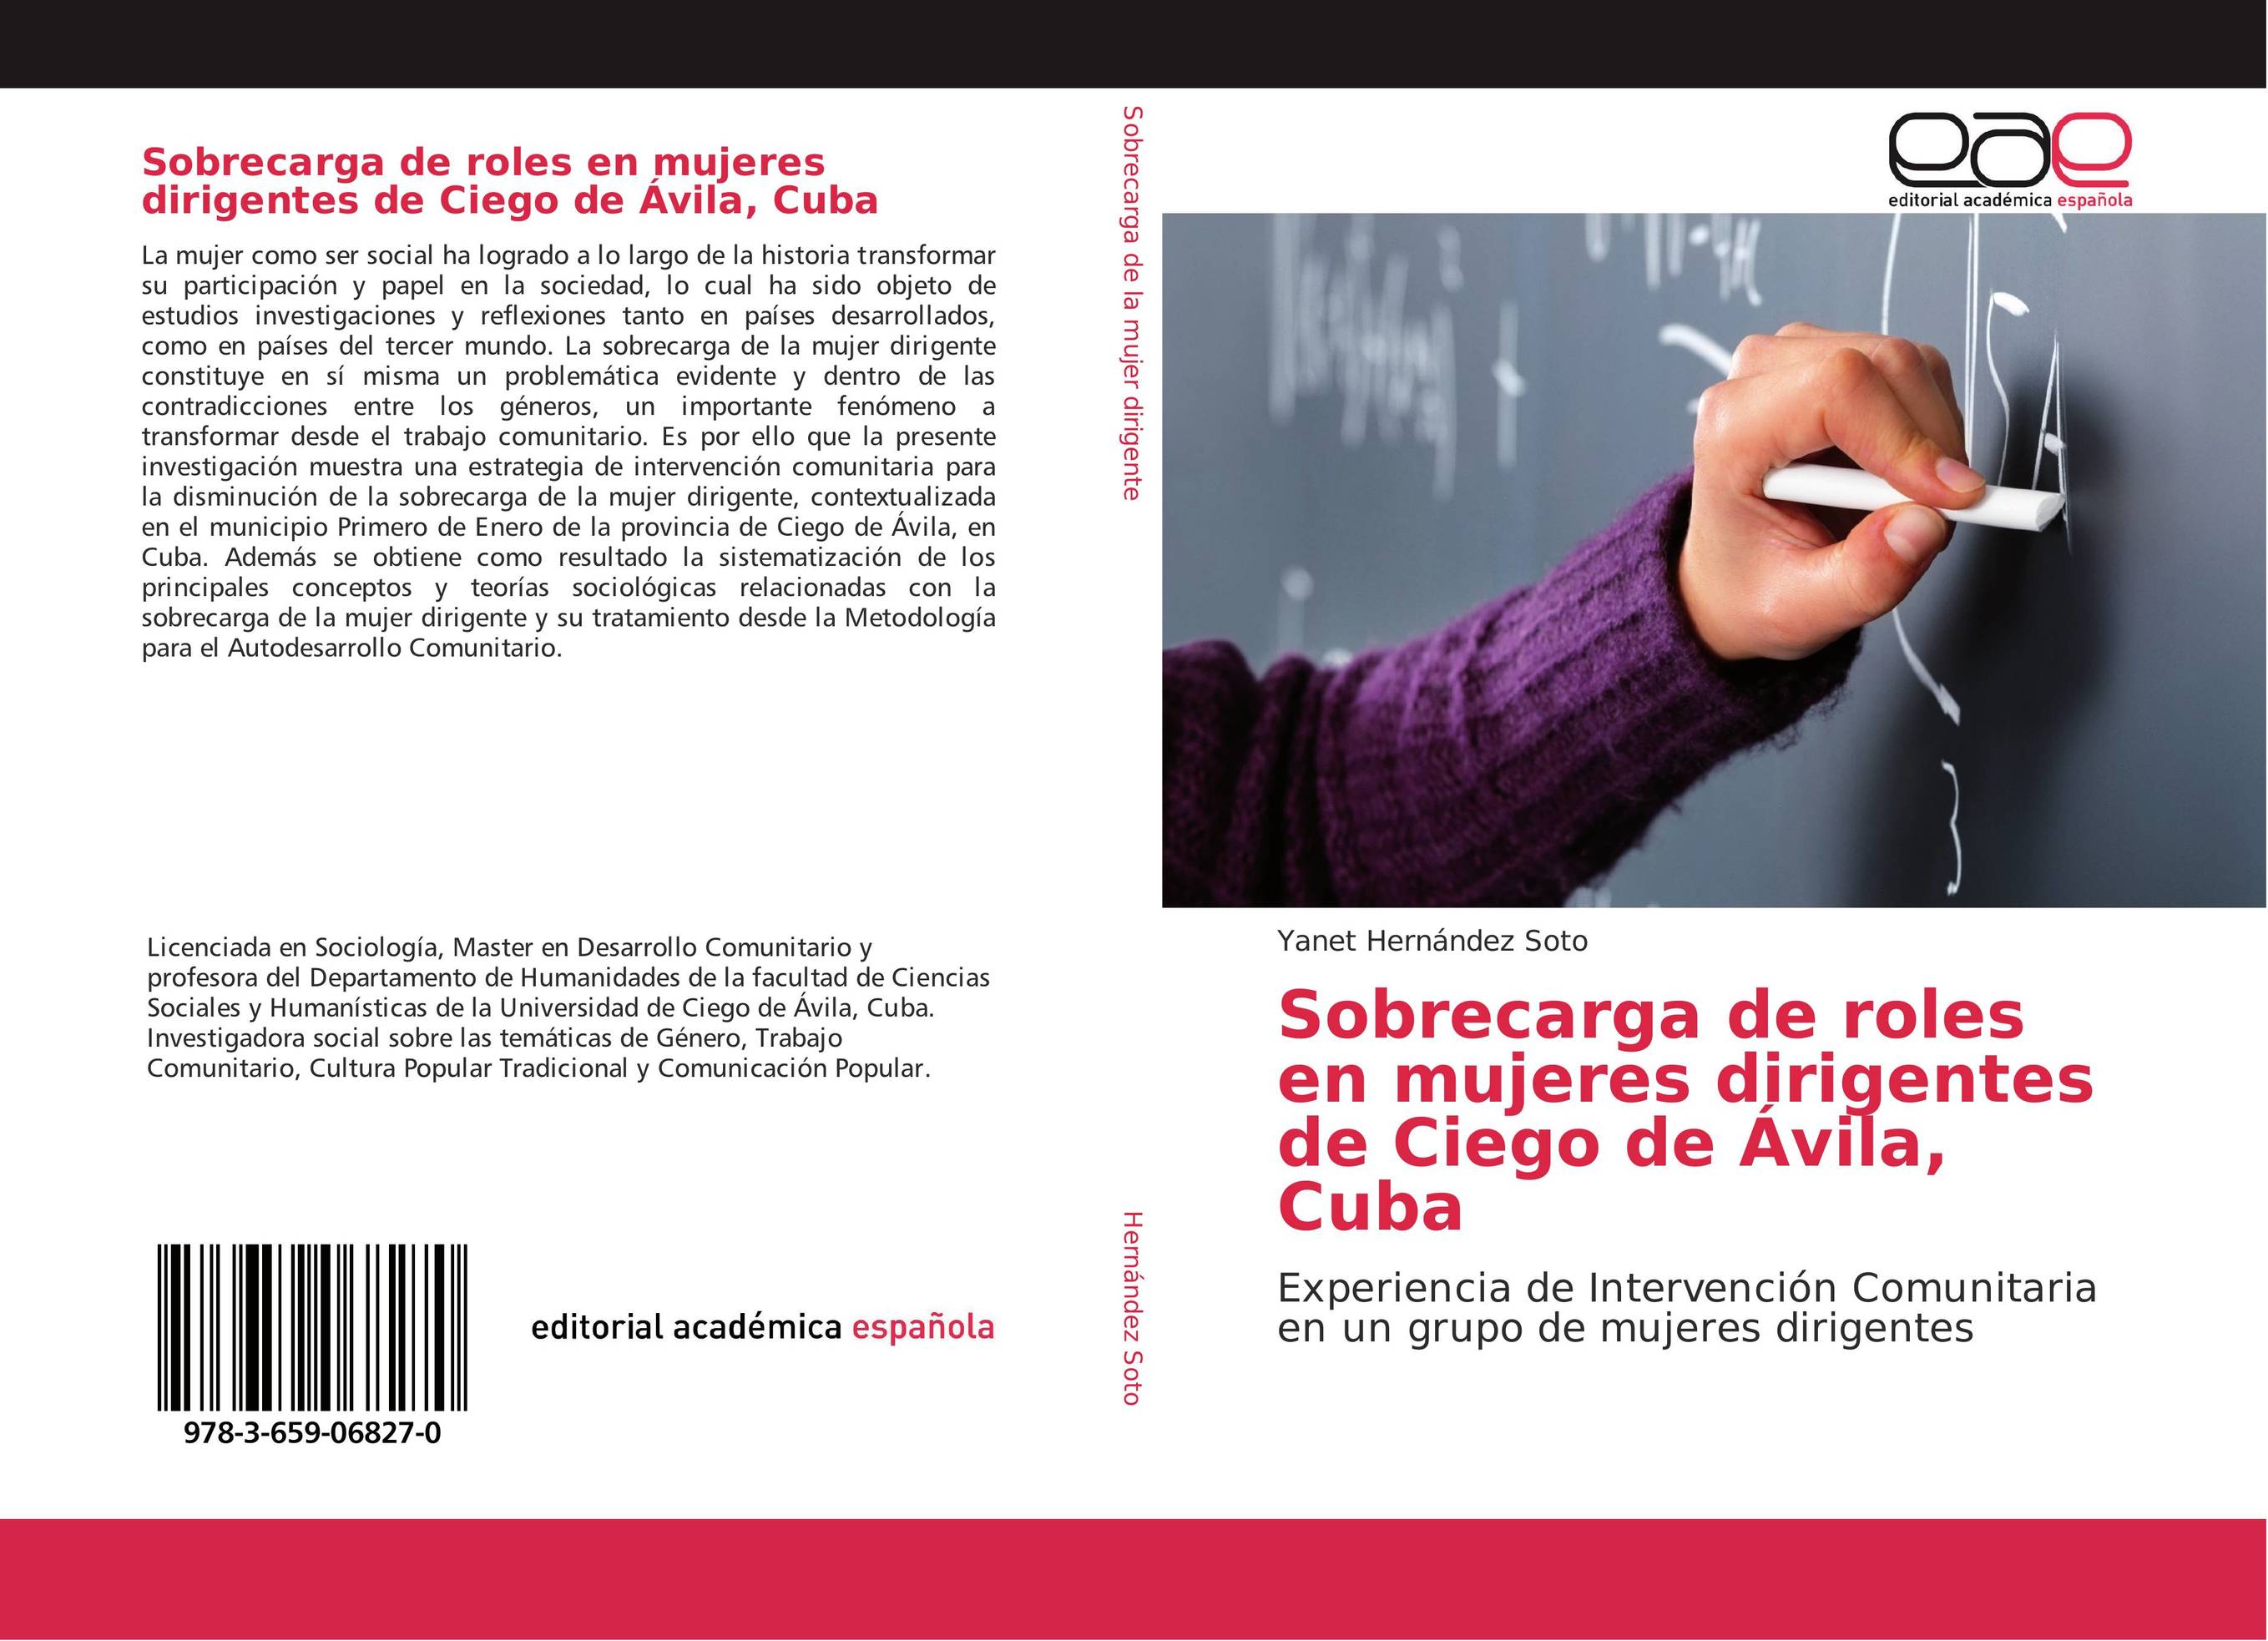 Sobrecarga de roles en mujeres dirigentes de Ciego de Ávila, Cuba